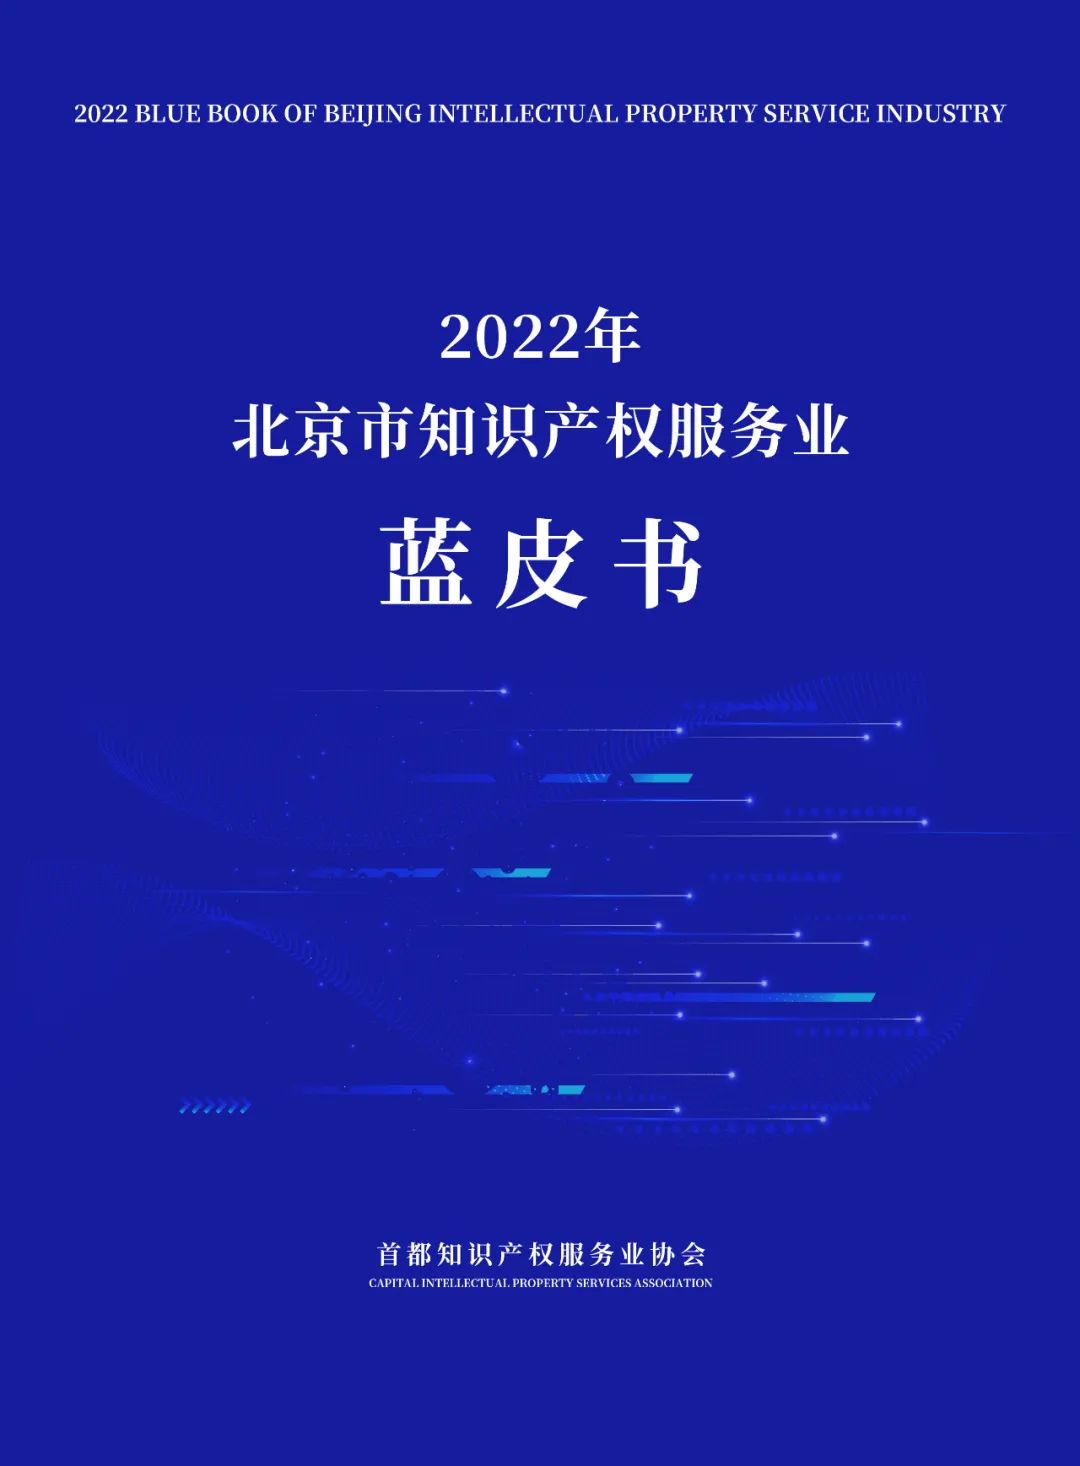 《2022年北京市知识产权服务业蓝皮书》重磅发布